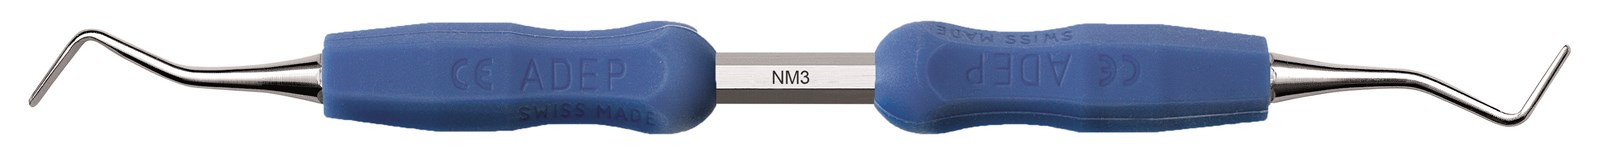 Lžičkové dlátko - NM3, Bez návleku